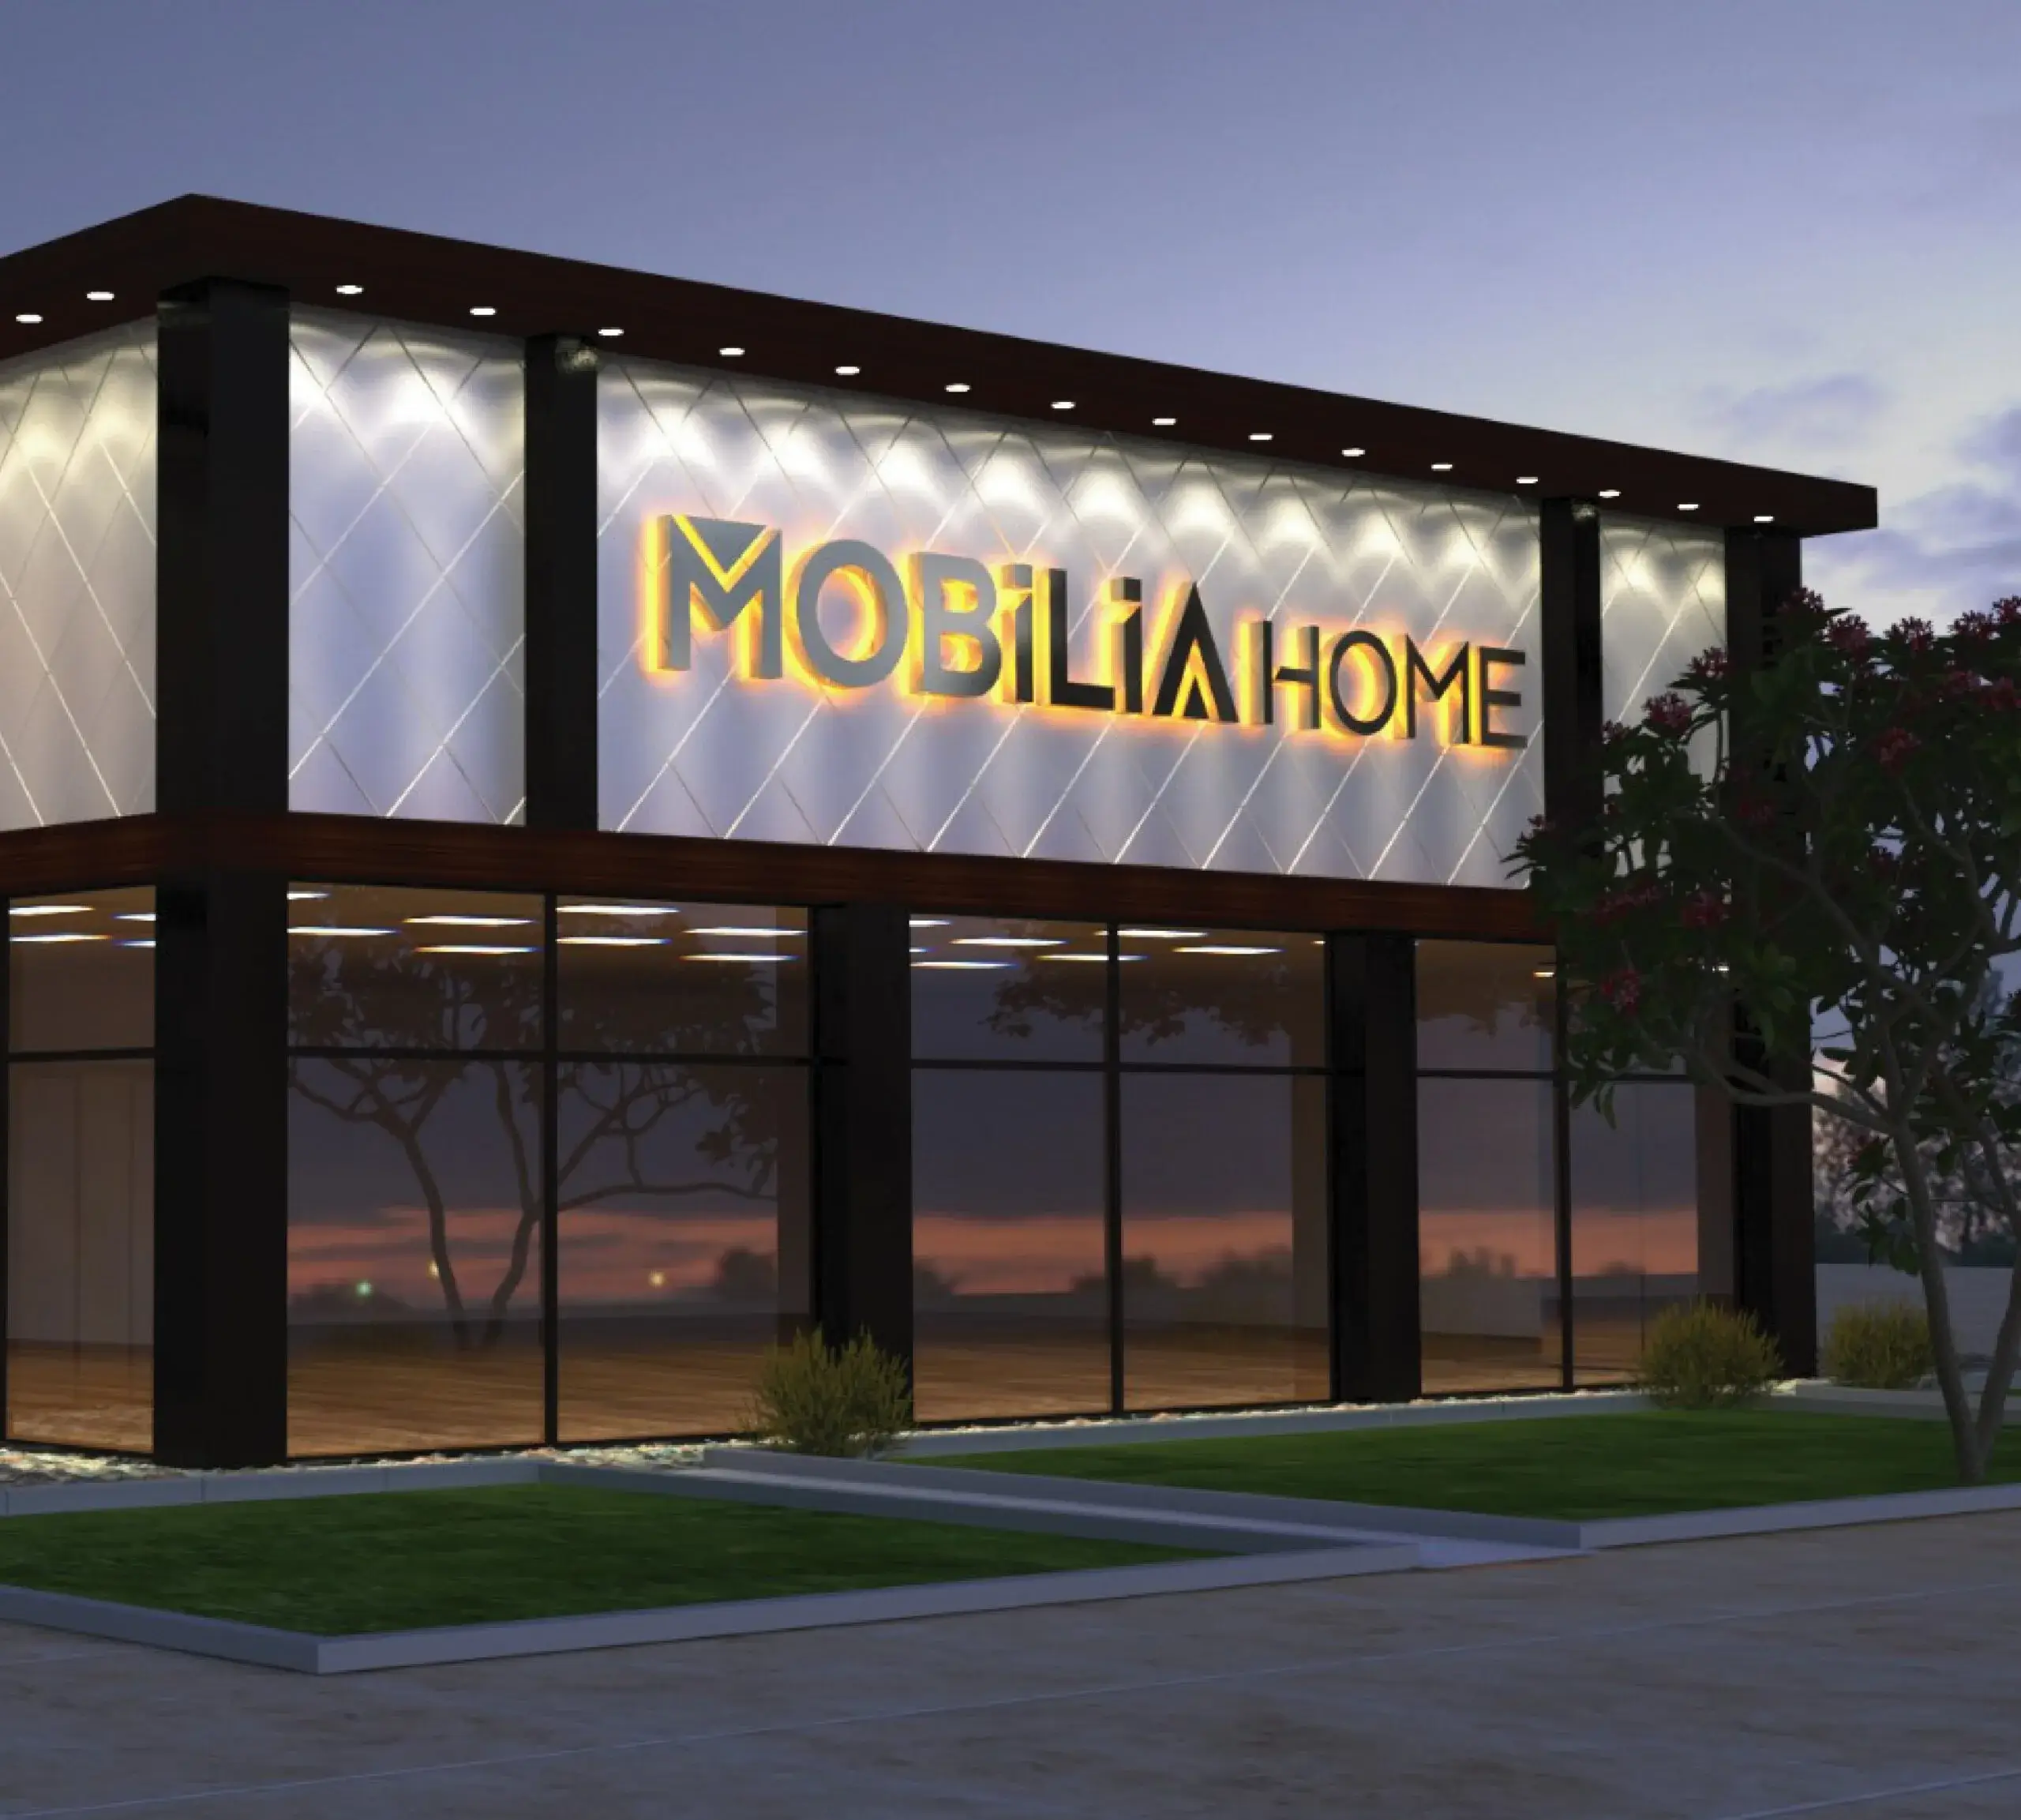 Bir mağazanın dış cephesinde Mobilia Home yazılı sarı ve siyah renkli reklam panosu